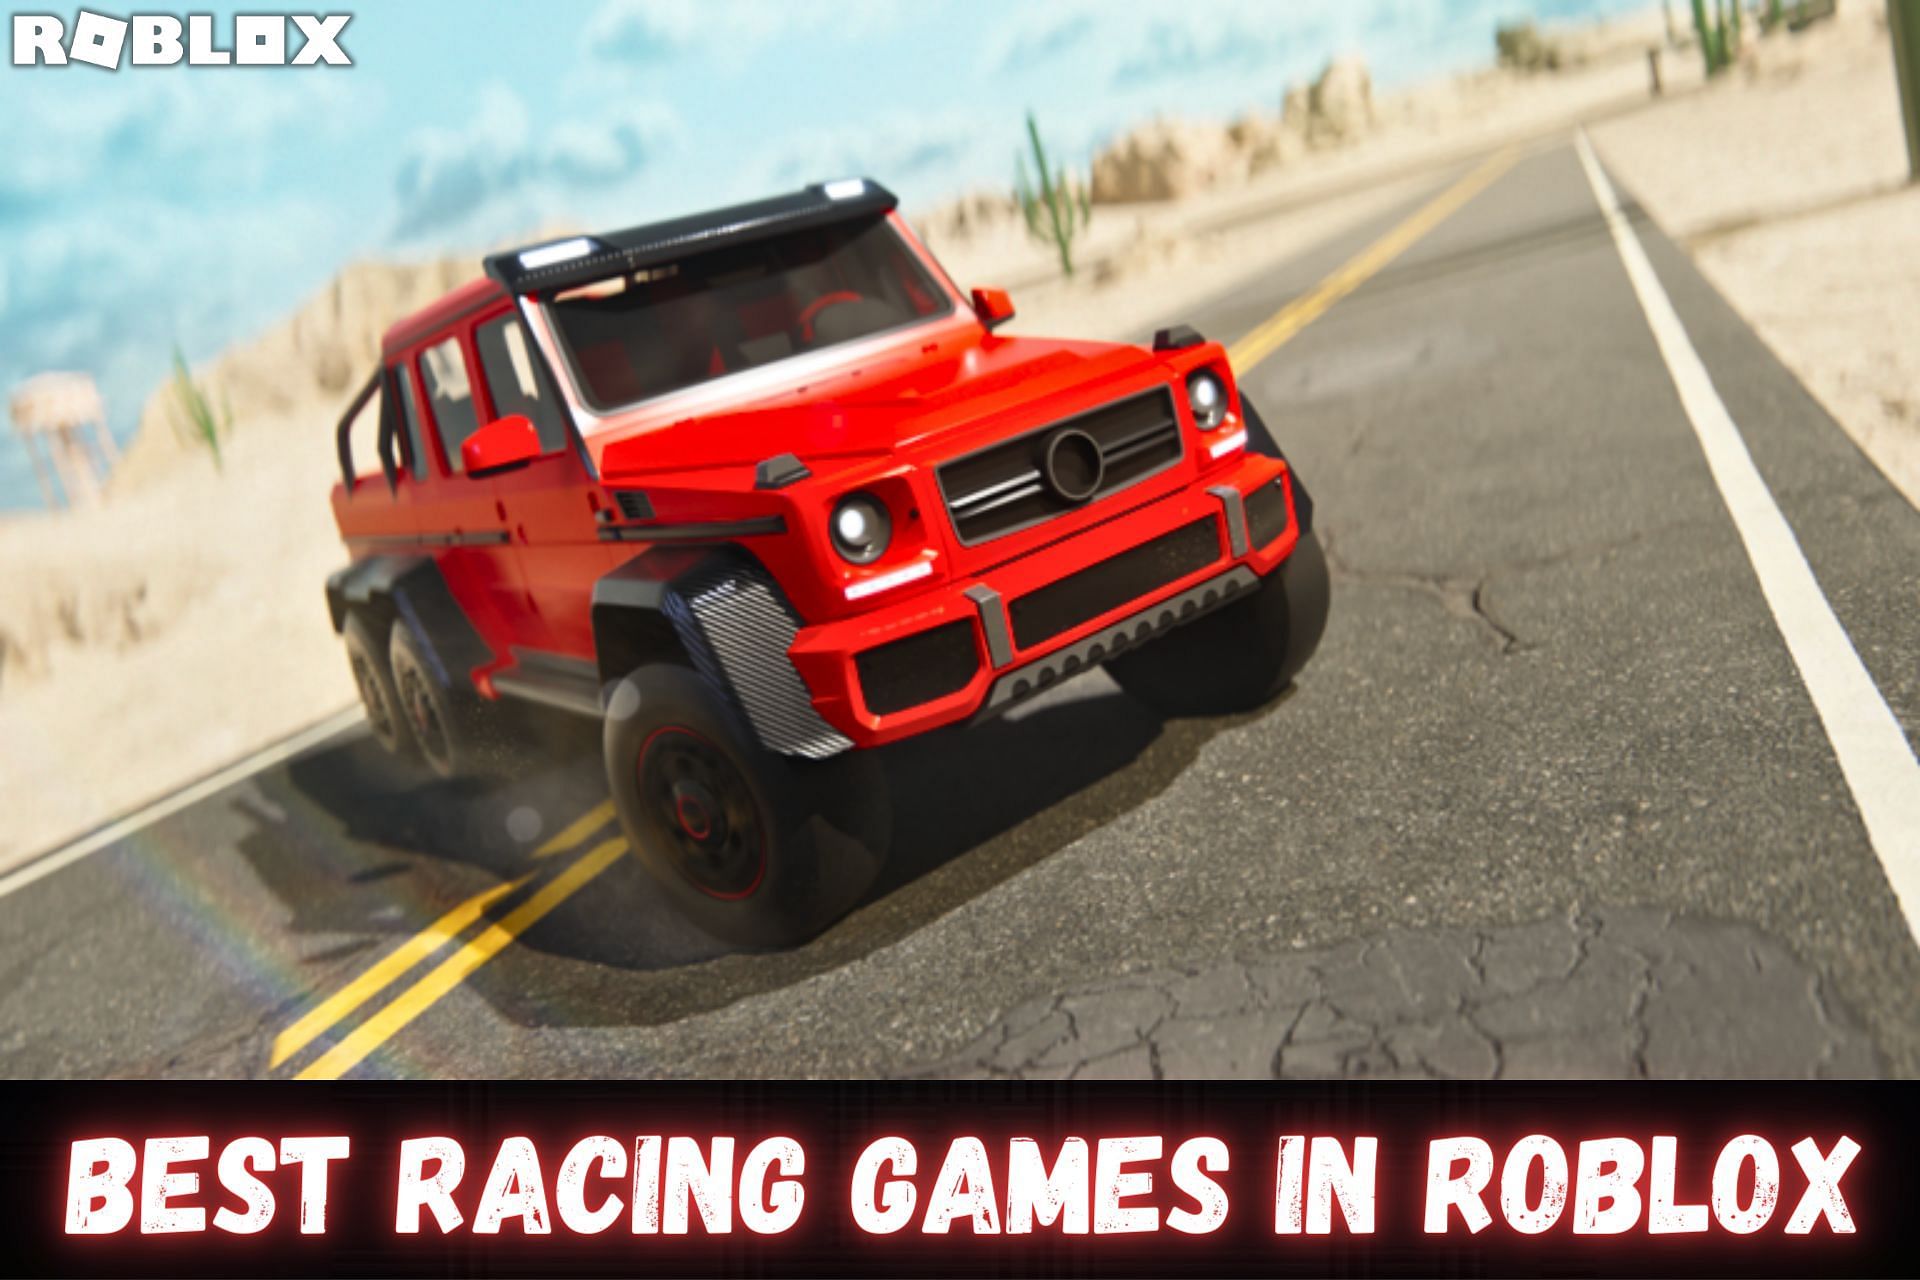 Roblox: Best Racing Games